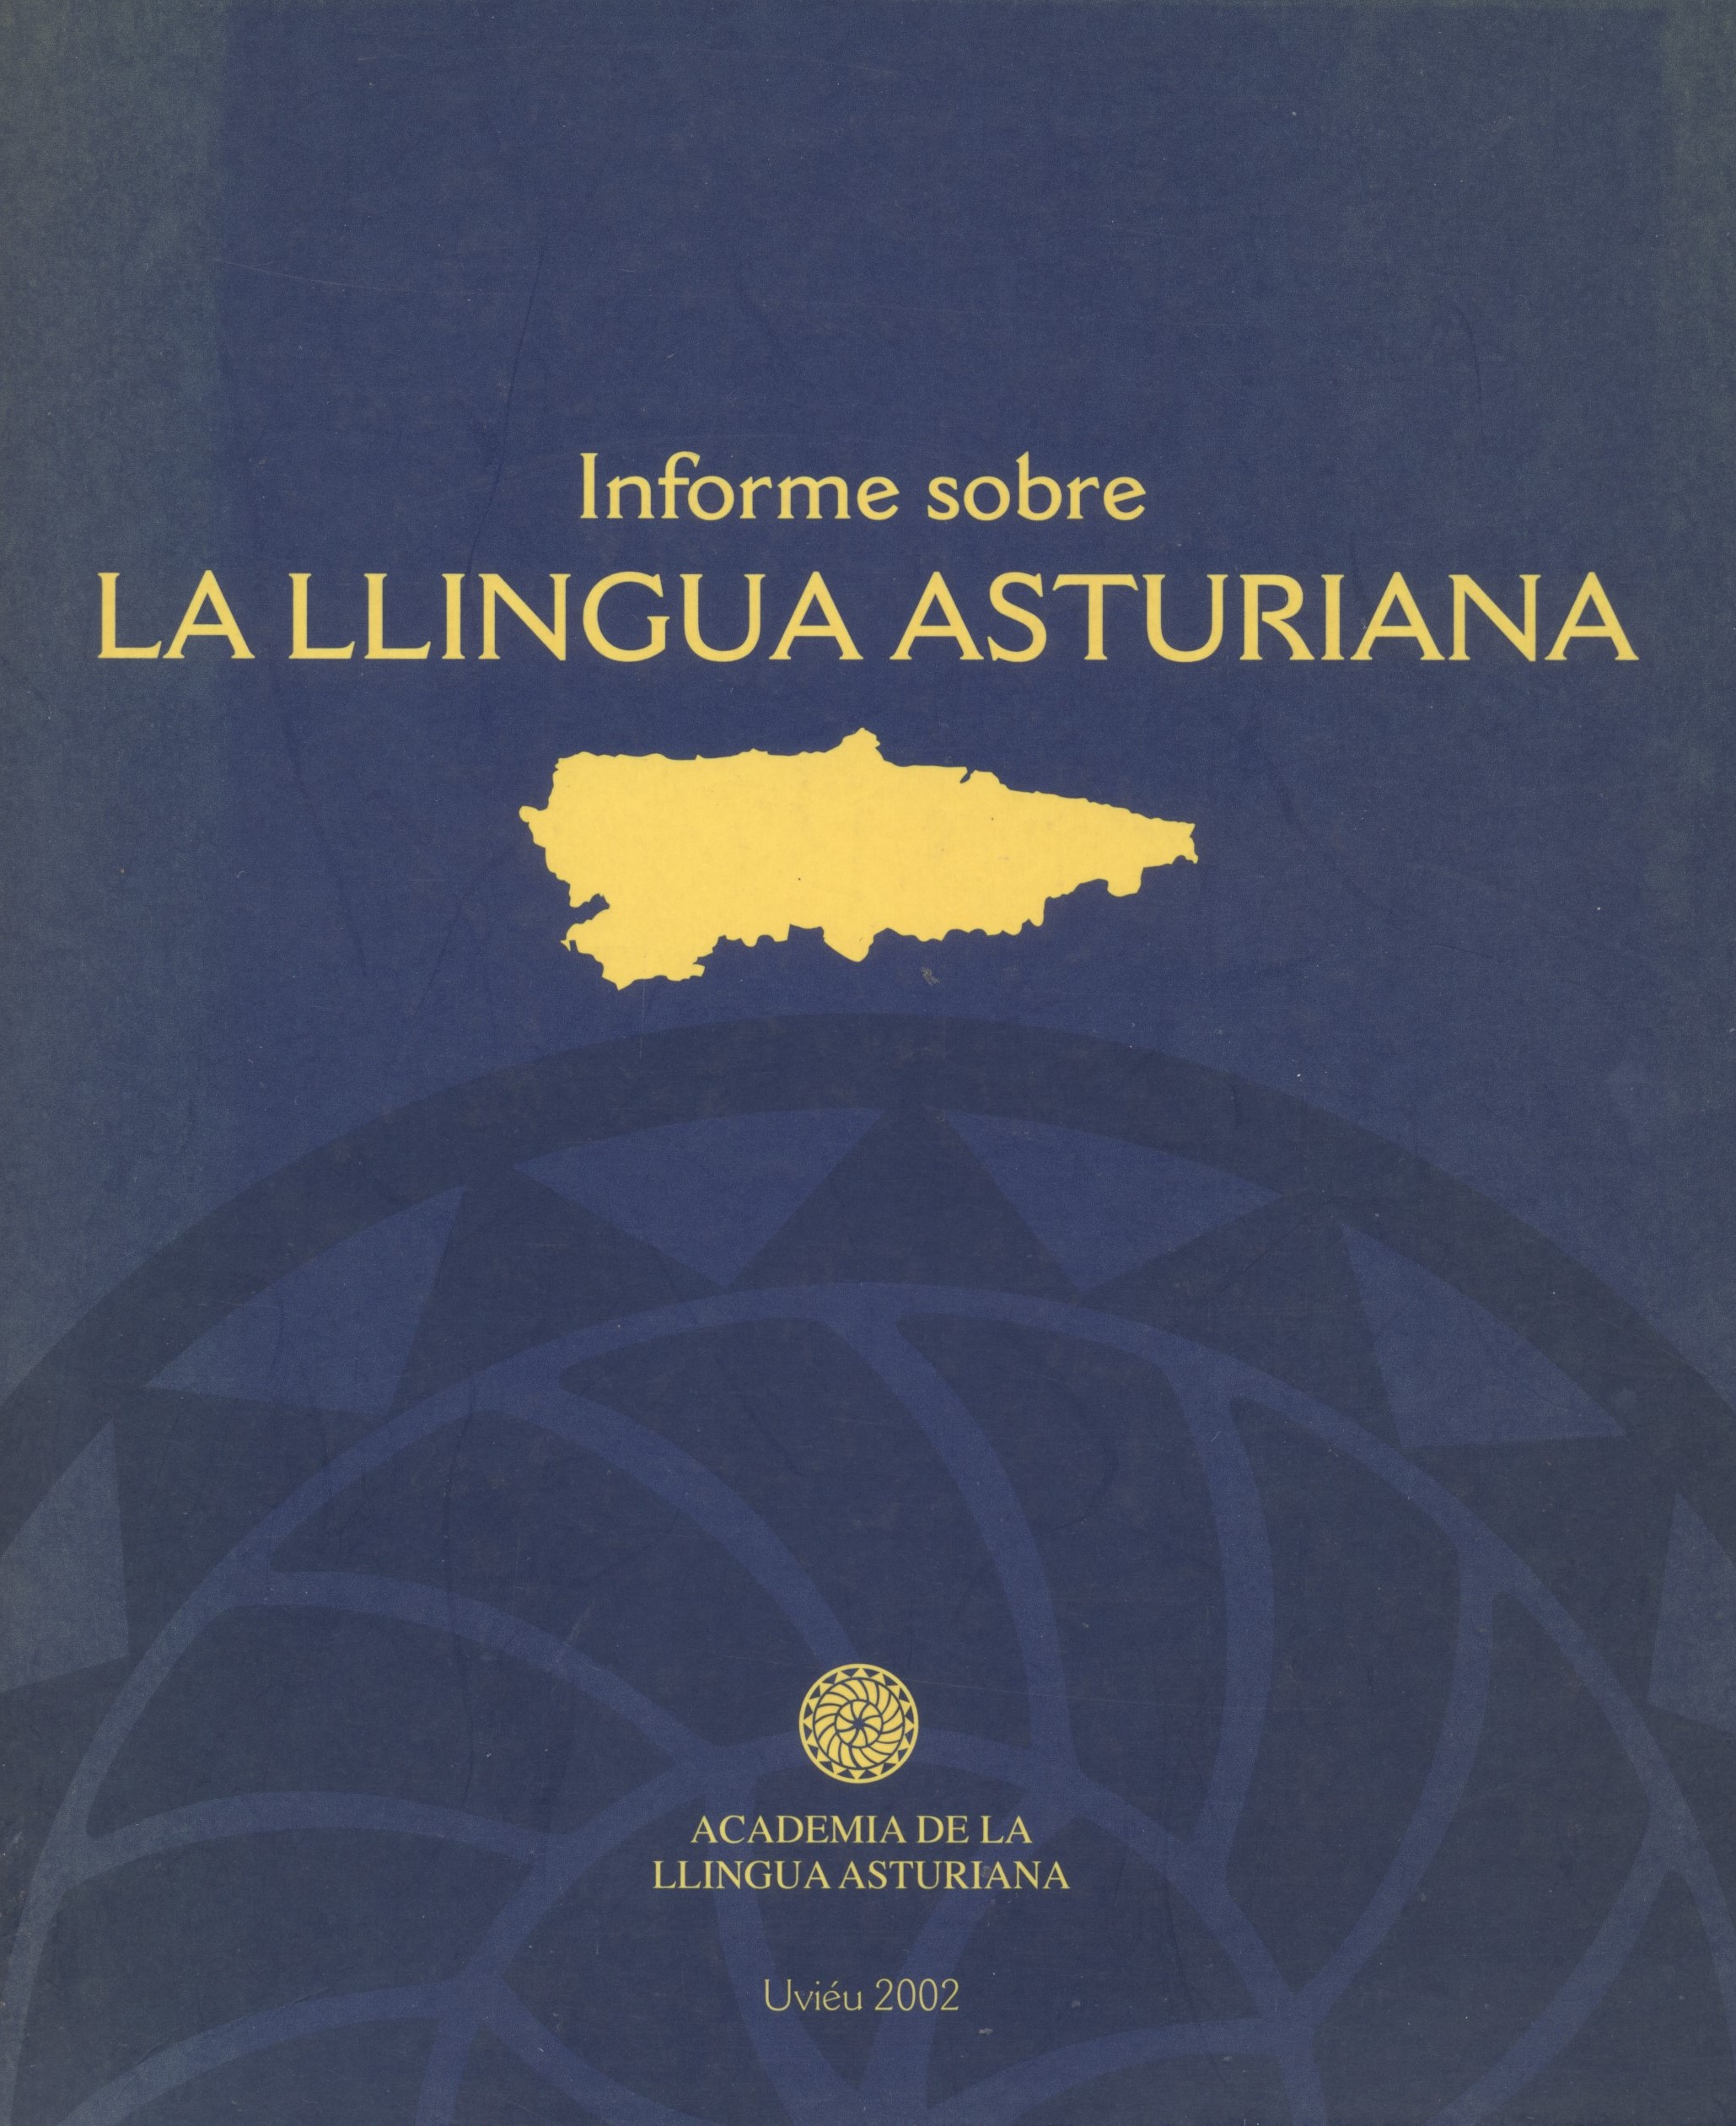 Imagen de portada del libro Informe sobre la llingua asturiana